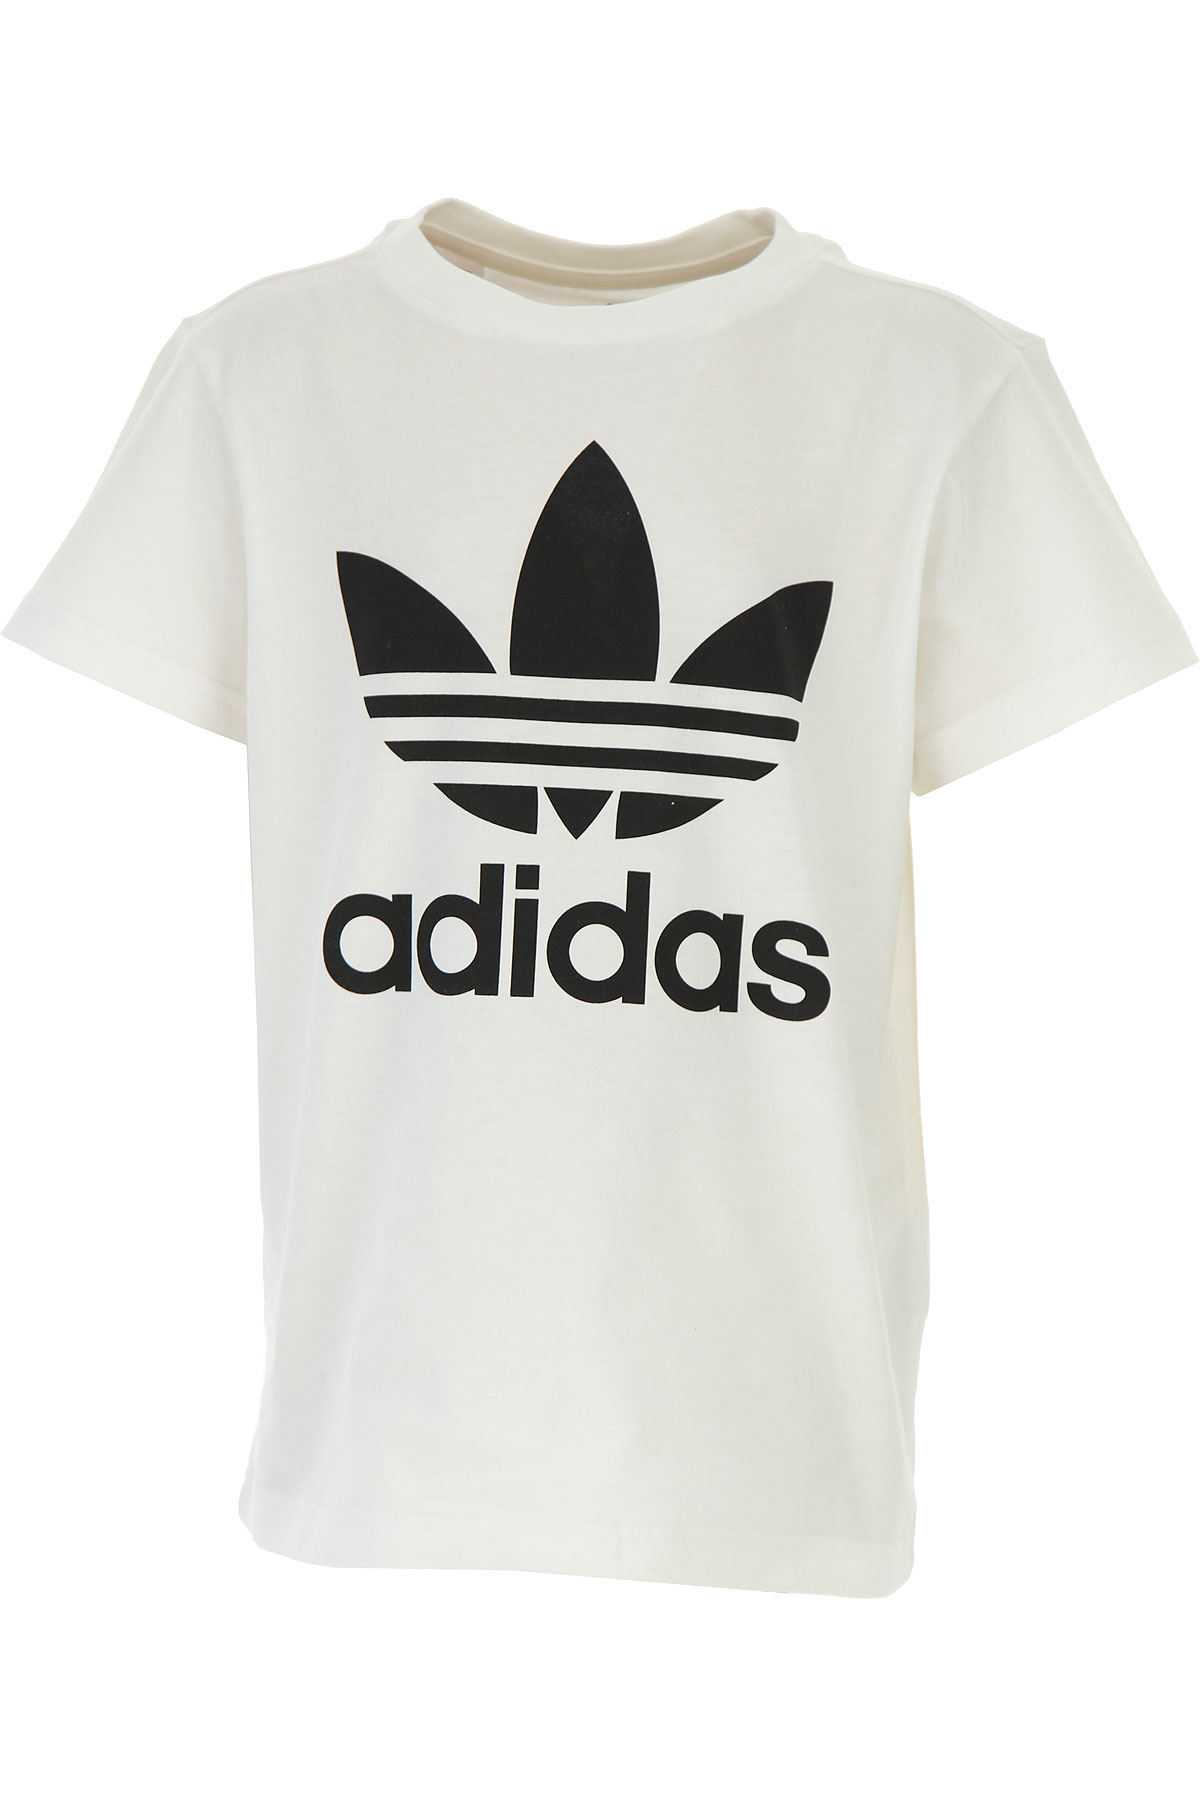 Adidas Kinder T-Shirt für Jungen Günstig im Sale, Weiss, Baumwolle, 2017, 10Y 11Y 12Y